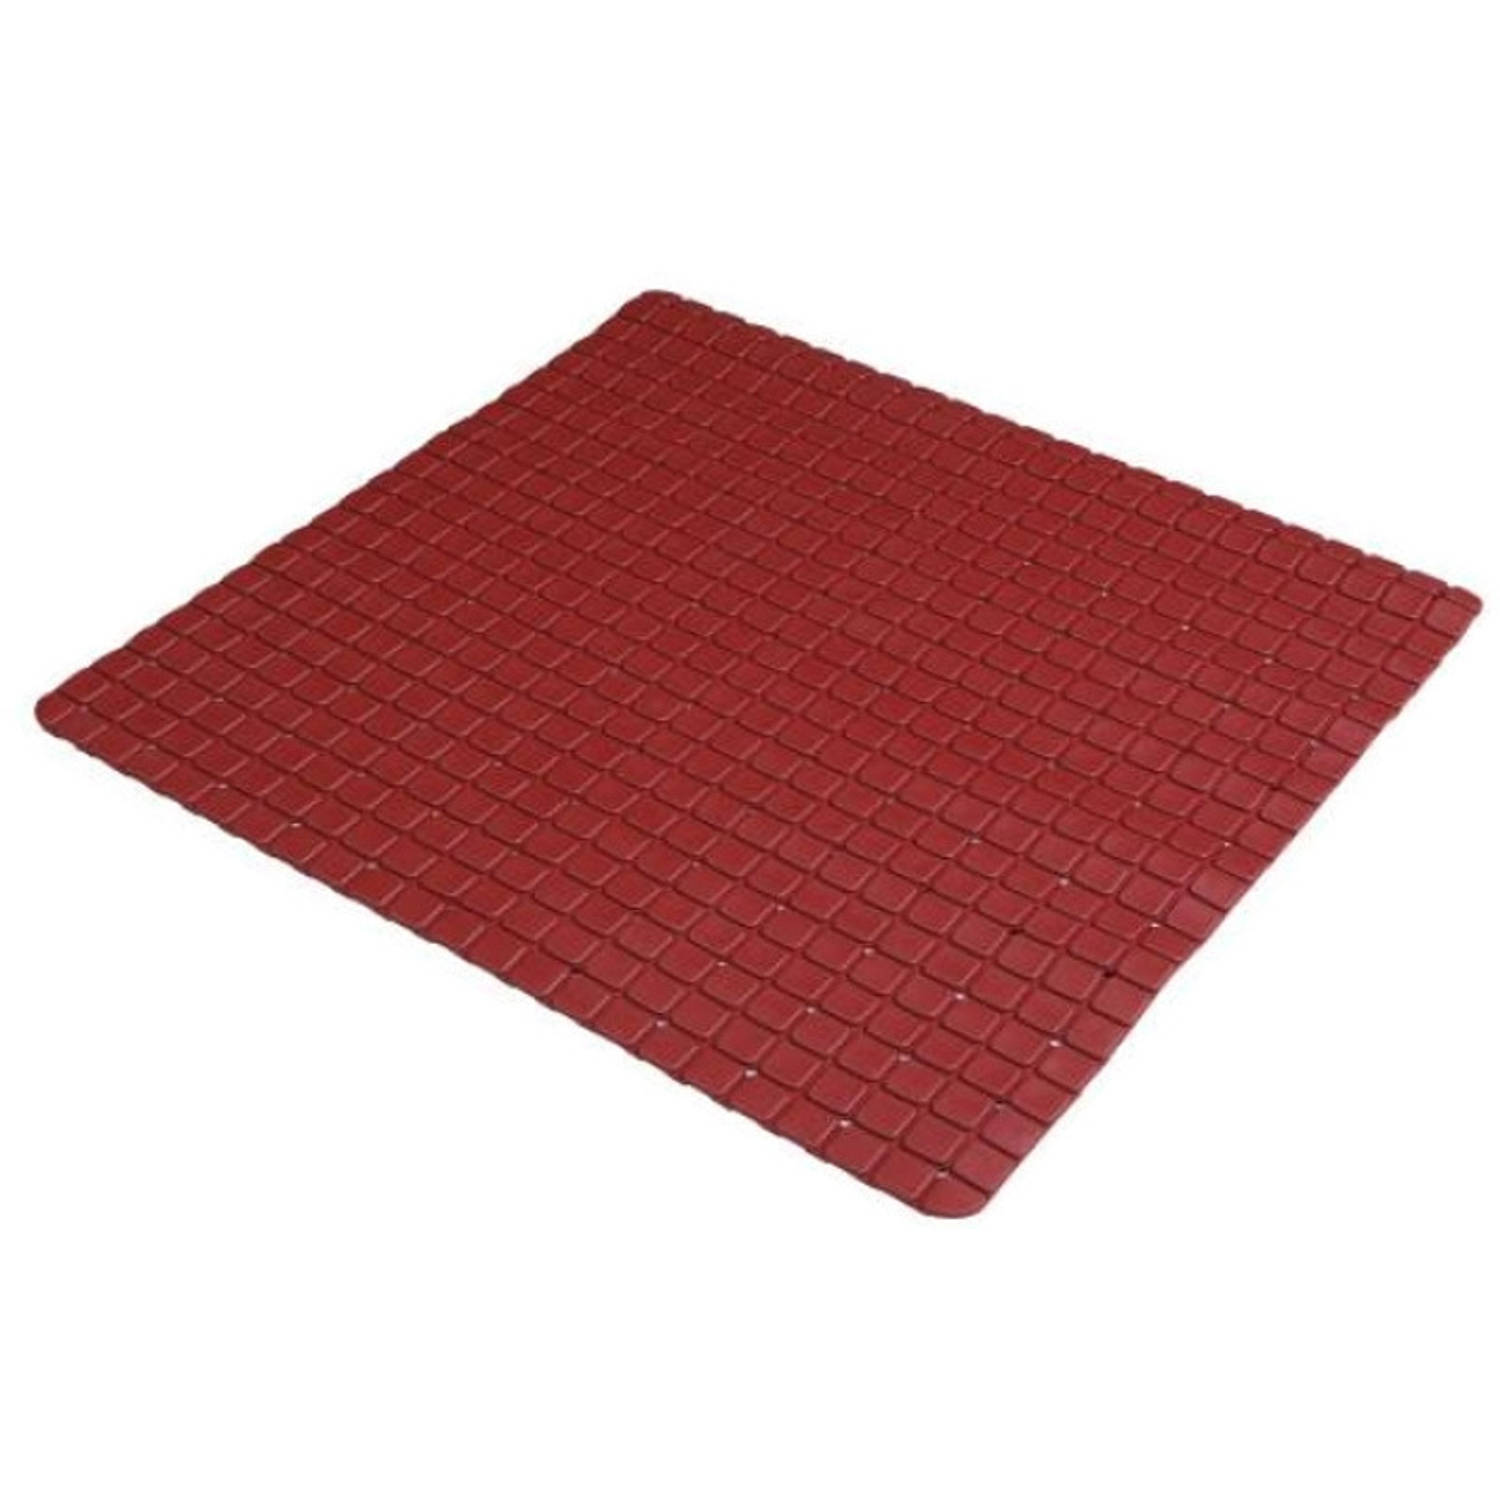 Urban Living Badkamer-douche anti slip mat rubber voor op de vloer donkerrood 55 x 55 cm Badmatjes